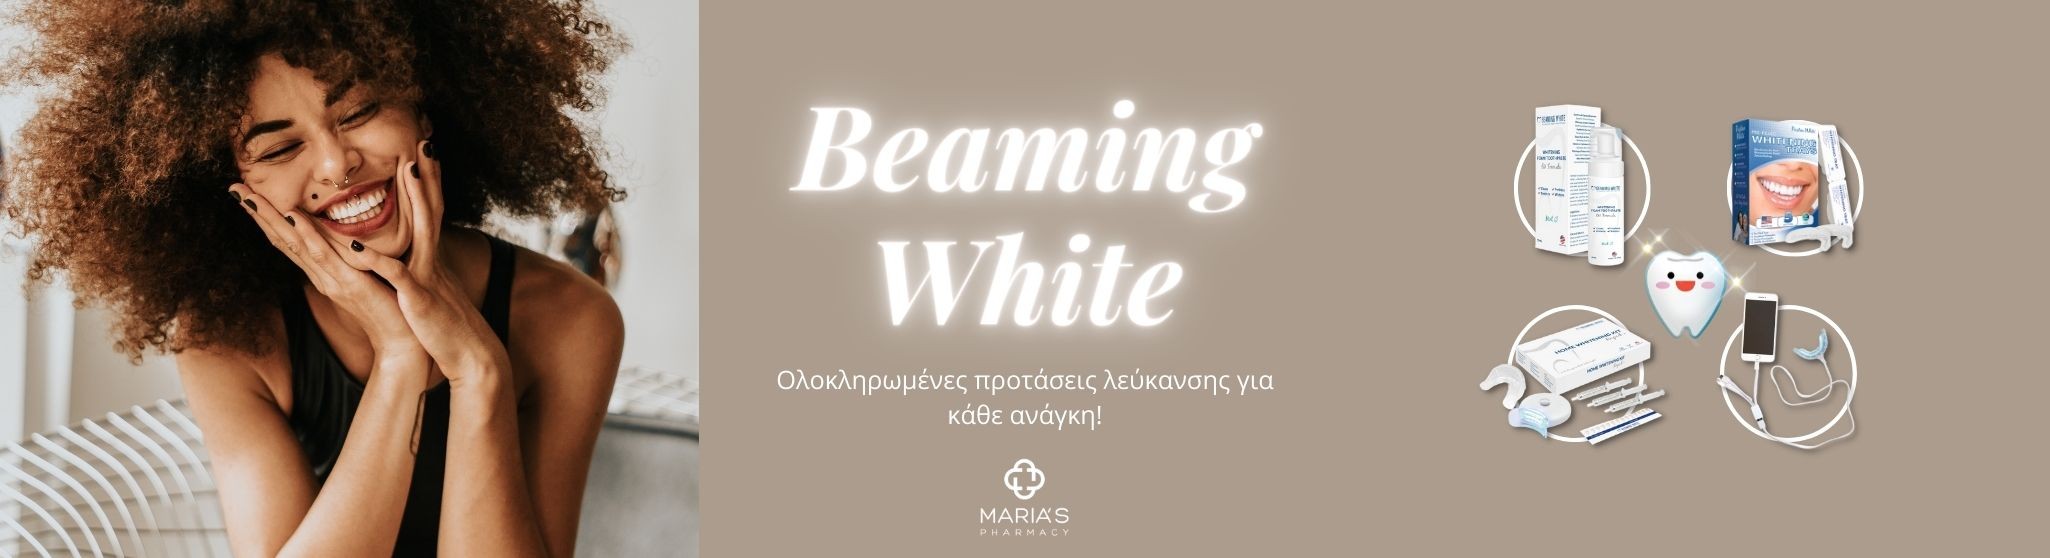 beaming white greece leukansi